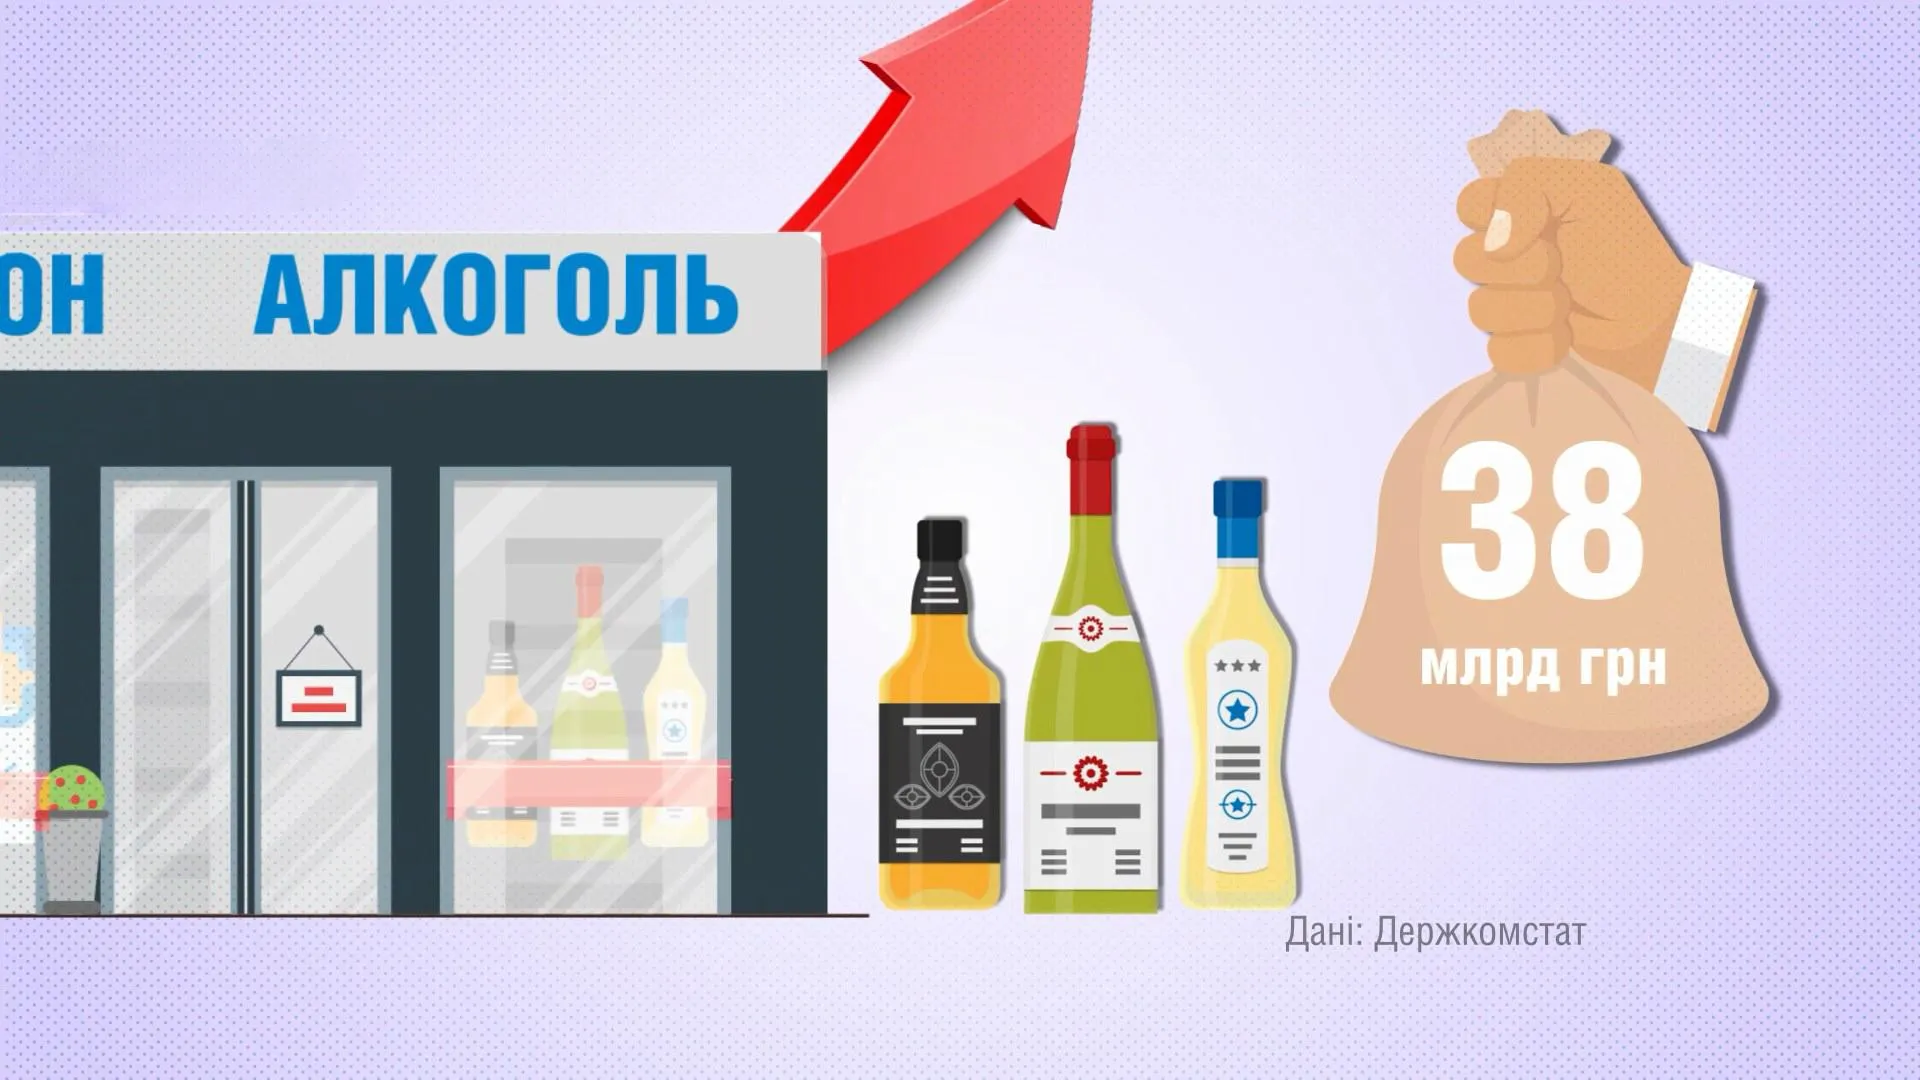 За перших 4 місяці 2018 року українці накупували спиртного на 38 мільярдів гривень